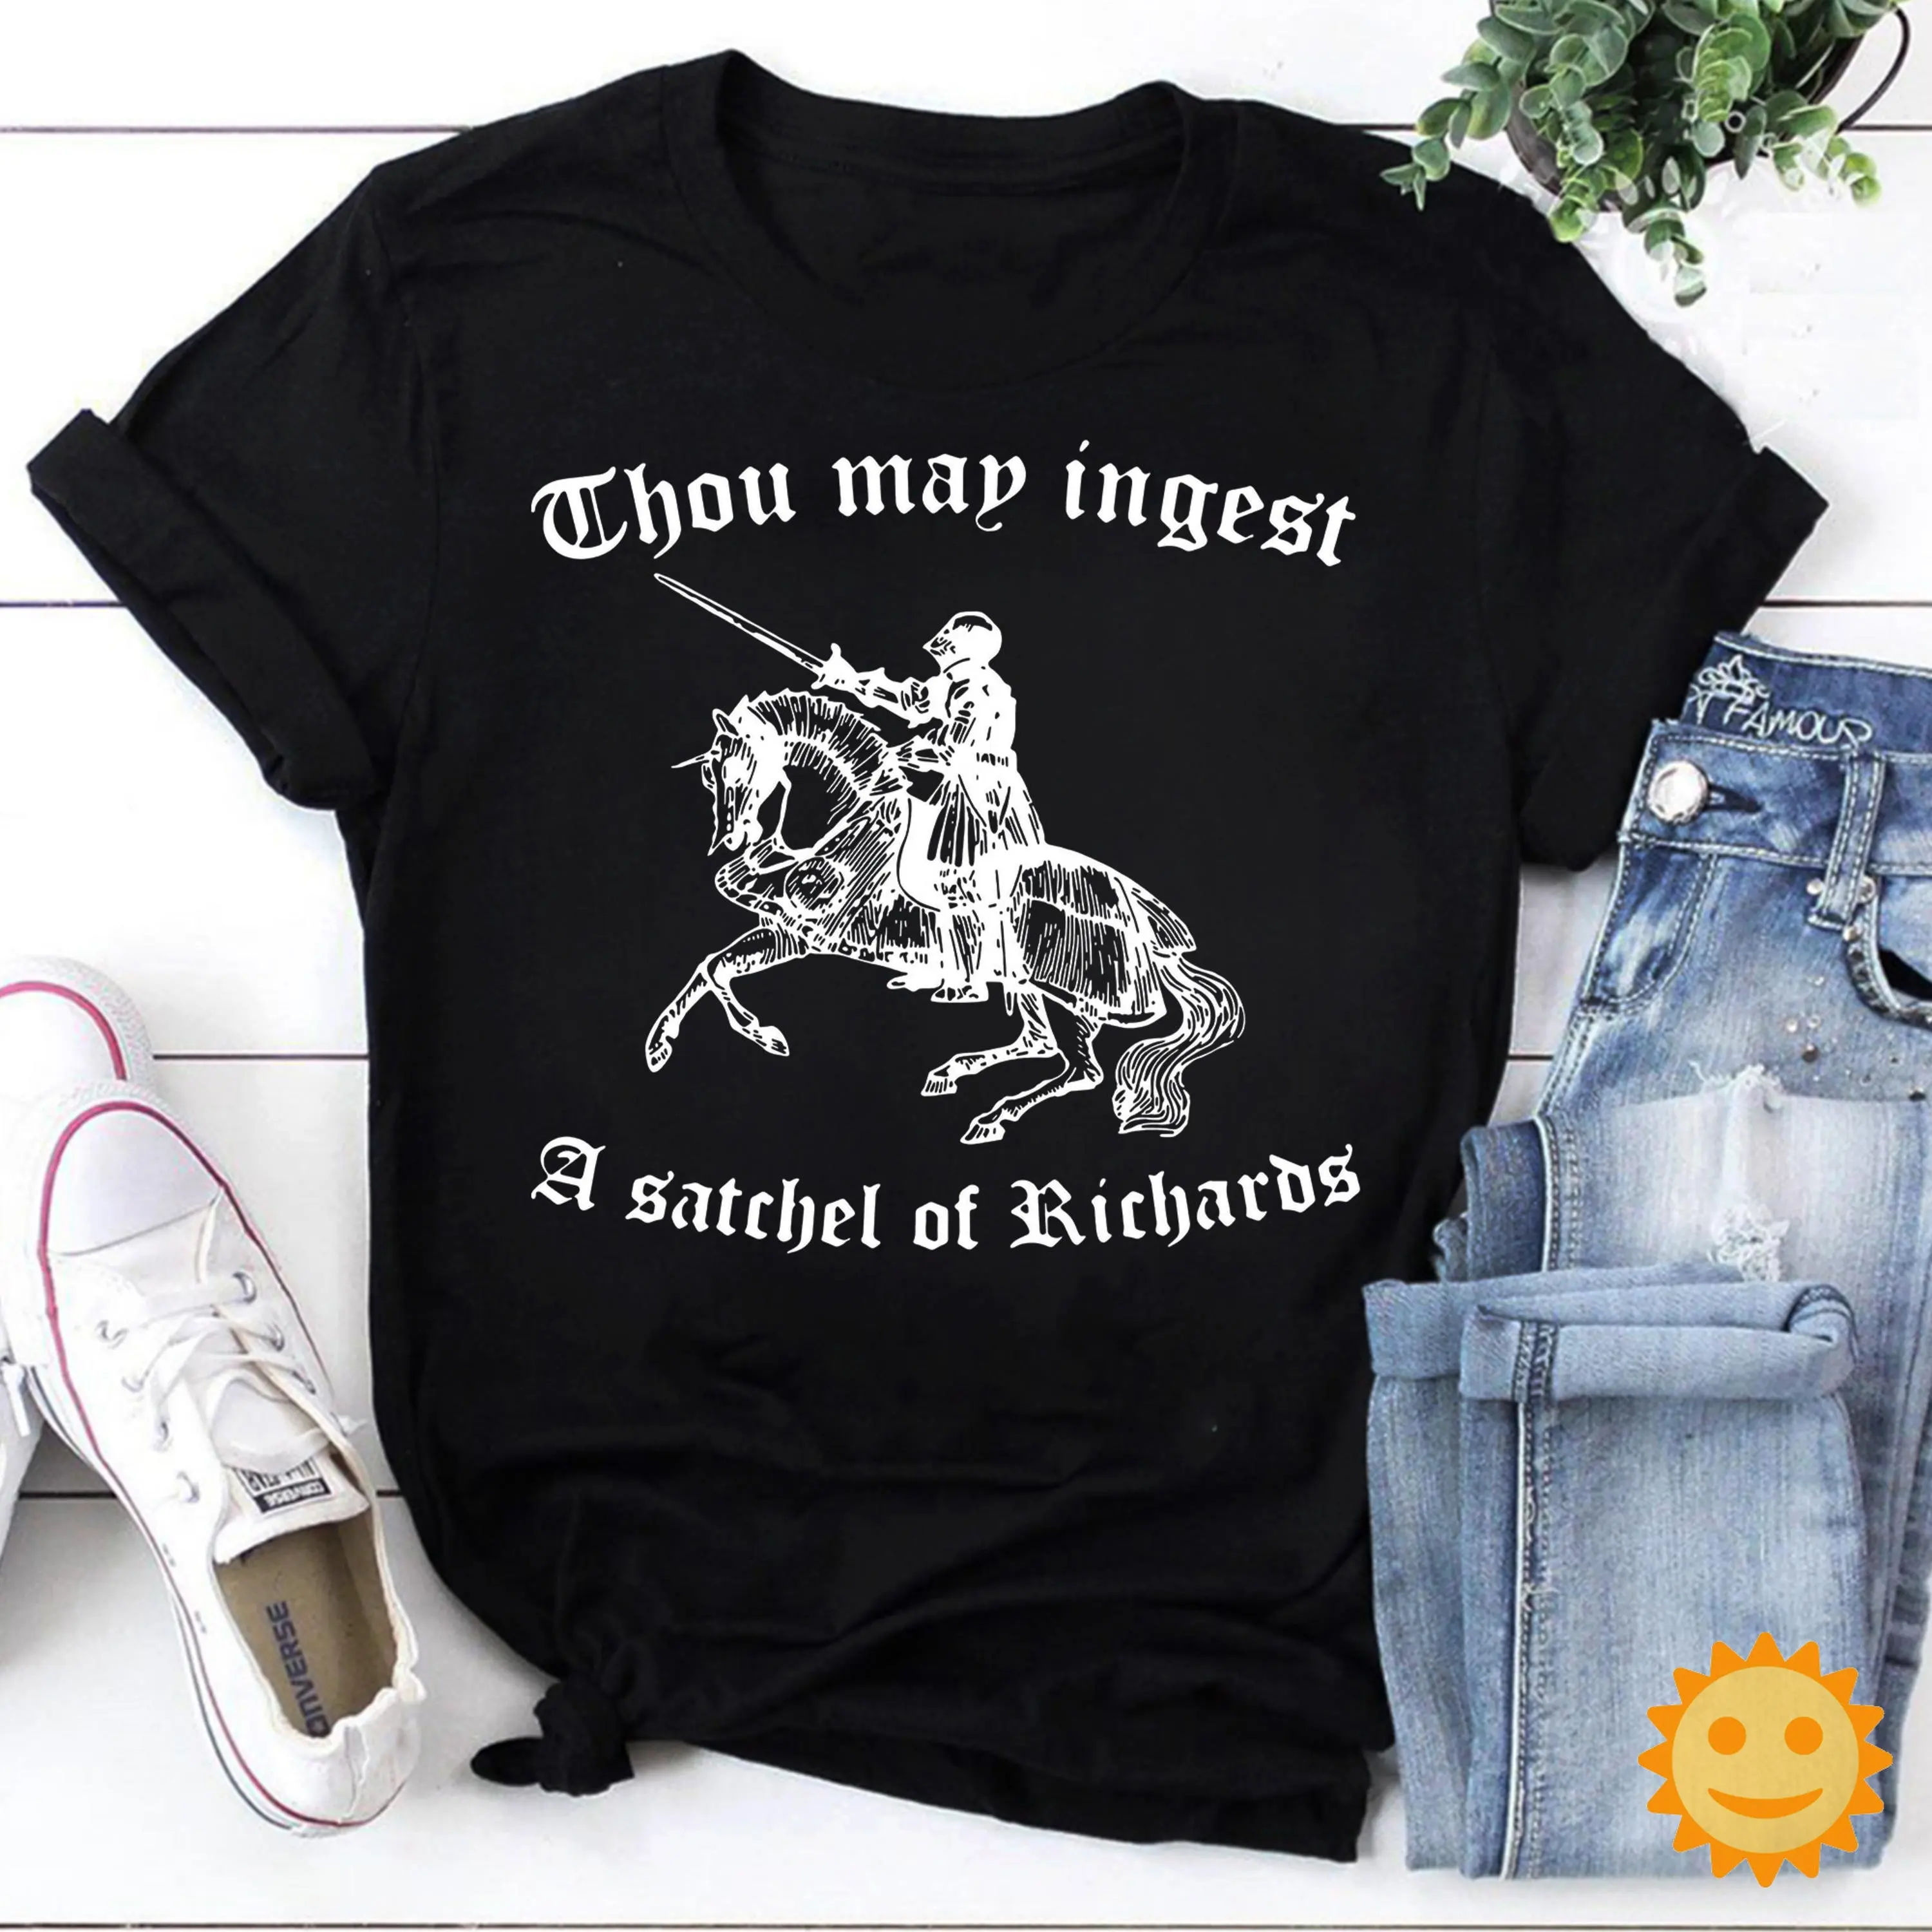 Ты Можешь съесть винтажную футболку Satchel of Richards.